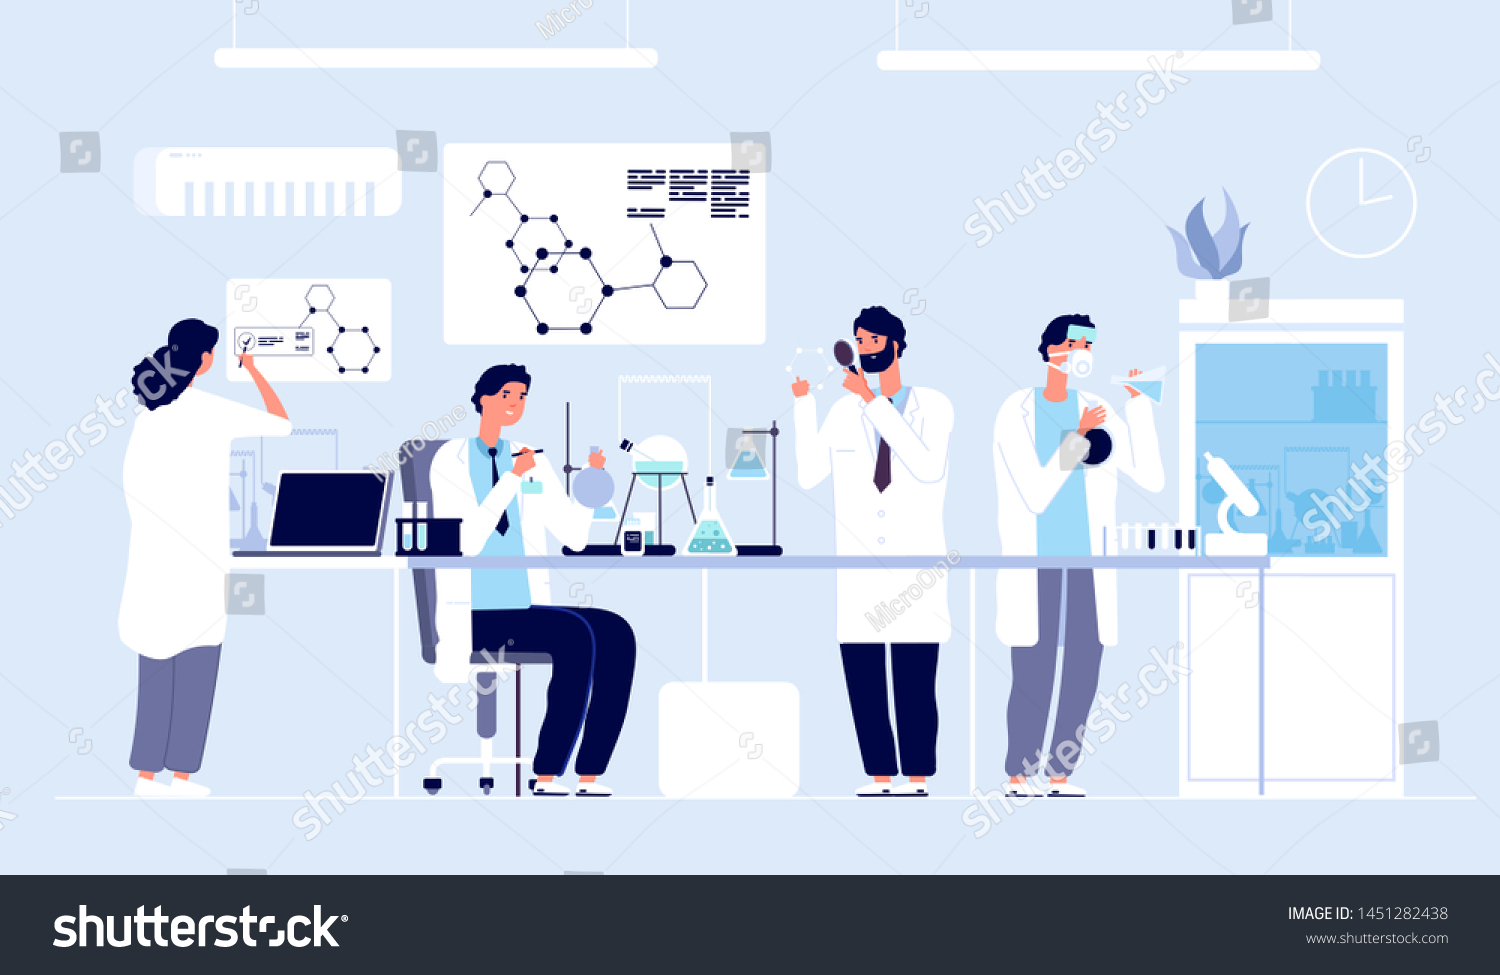 研究室の科学者 白衣を着た人々 実験用機器を持つ化学研究者 薬物開発の漫画のベクター画像コンセプト 研究室での科学者のイラスト 研究室での科学実験 のベクター画像素材 ロイヤリティフリー